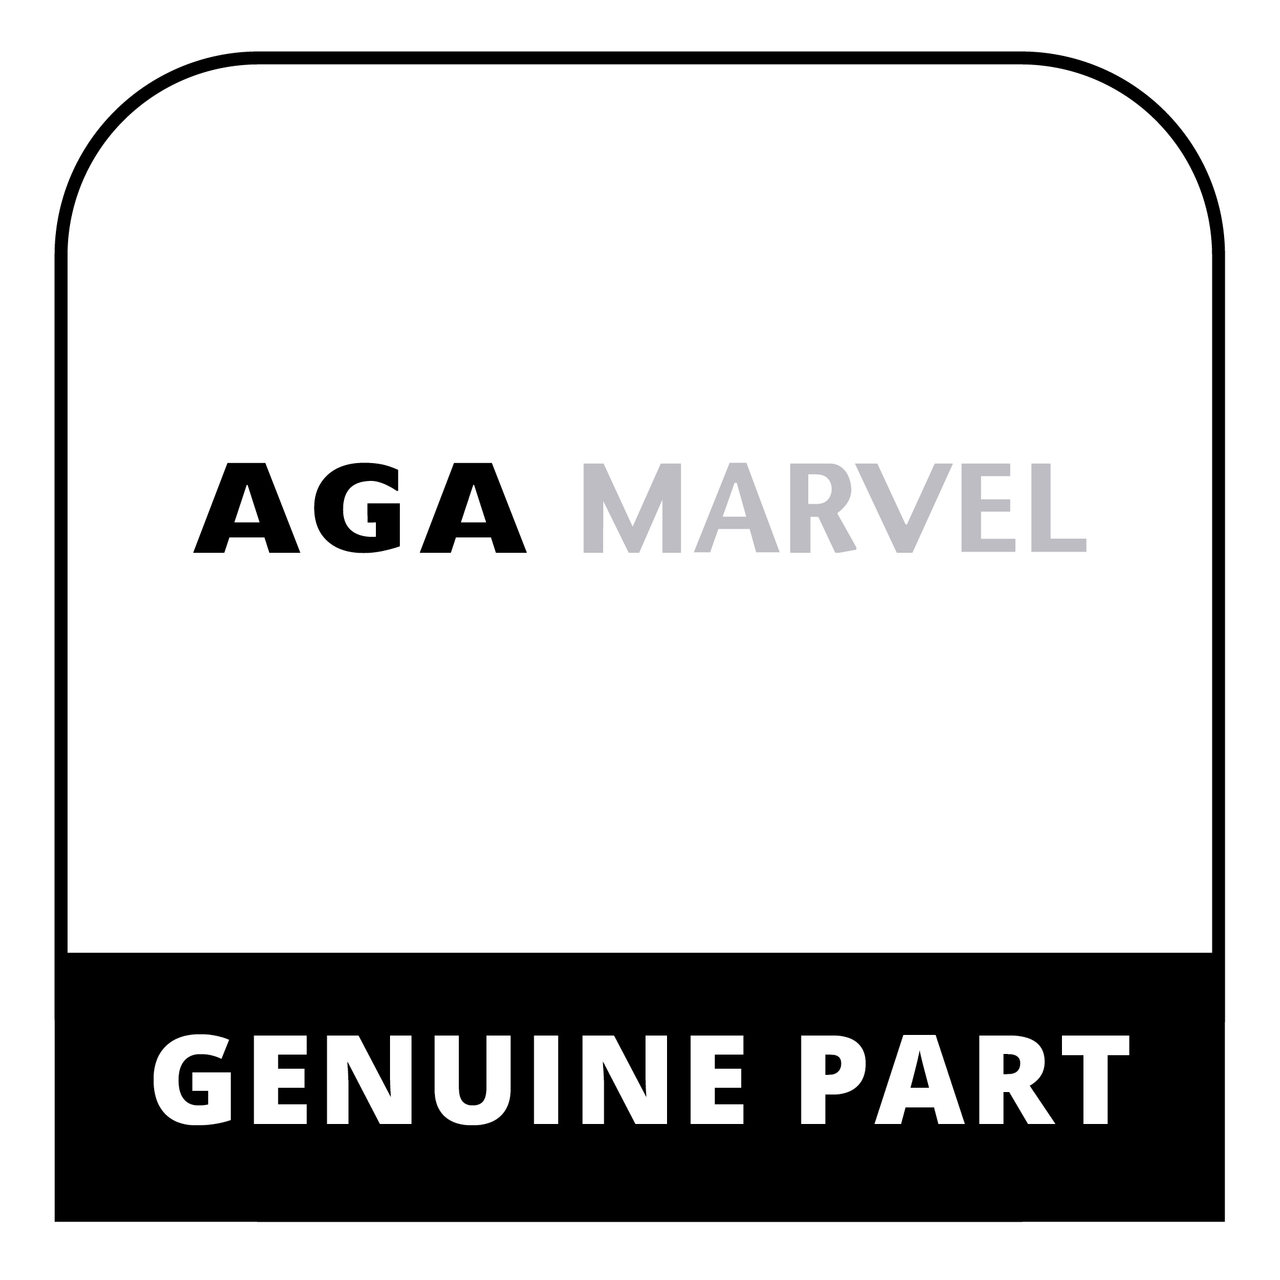 AGA Marvel 42248084 - S/A-D/A-30-L-Bgtfwdbg-Ran-Dc - Genuine AGA Marvel Part